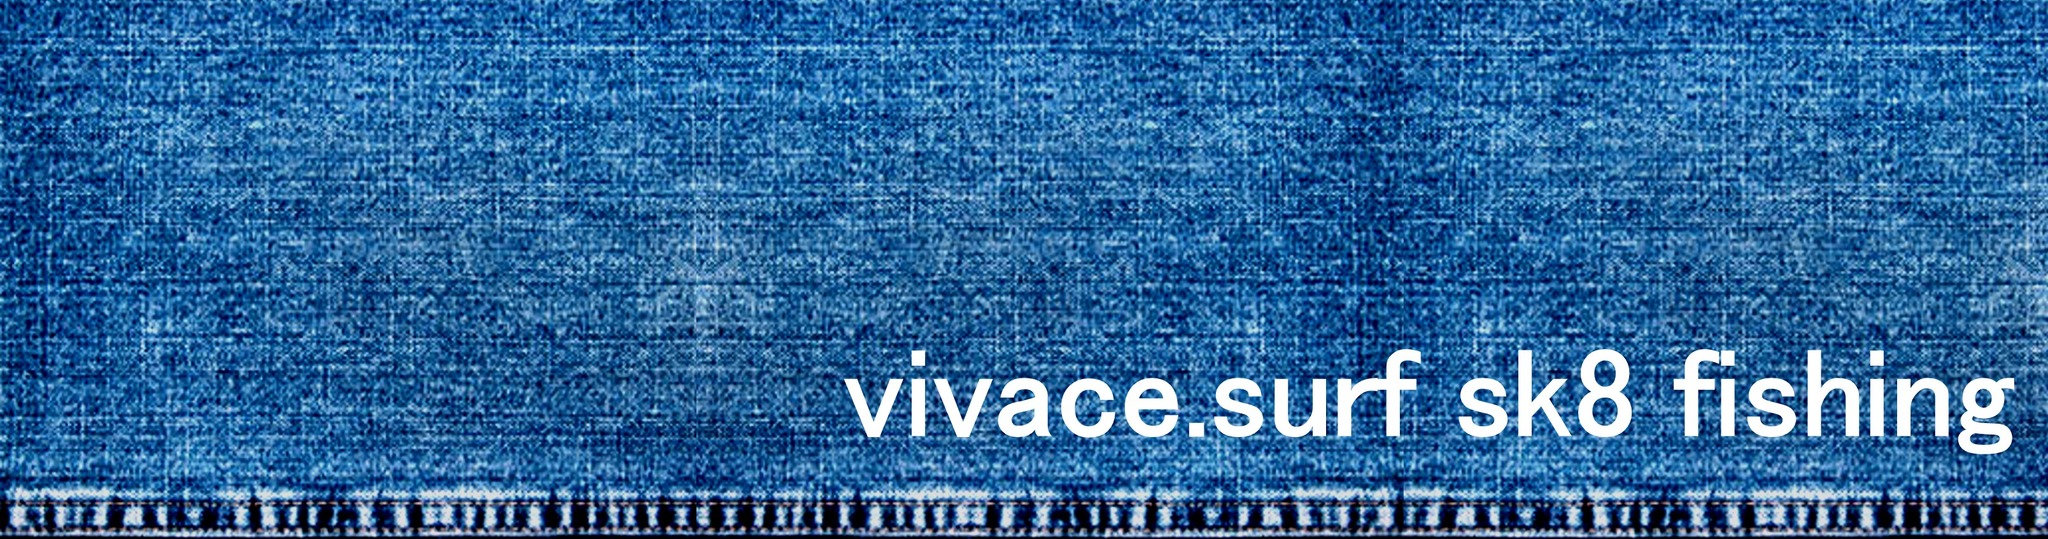 vivace . surf sk8 fishing